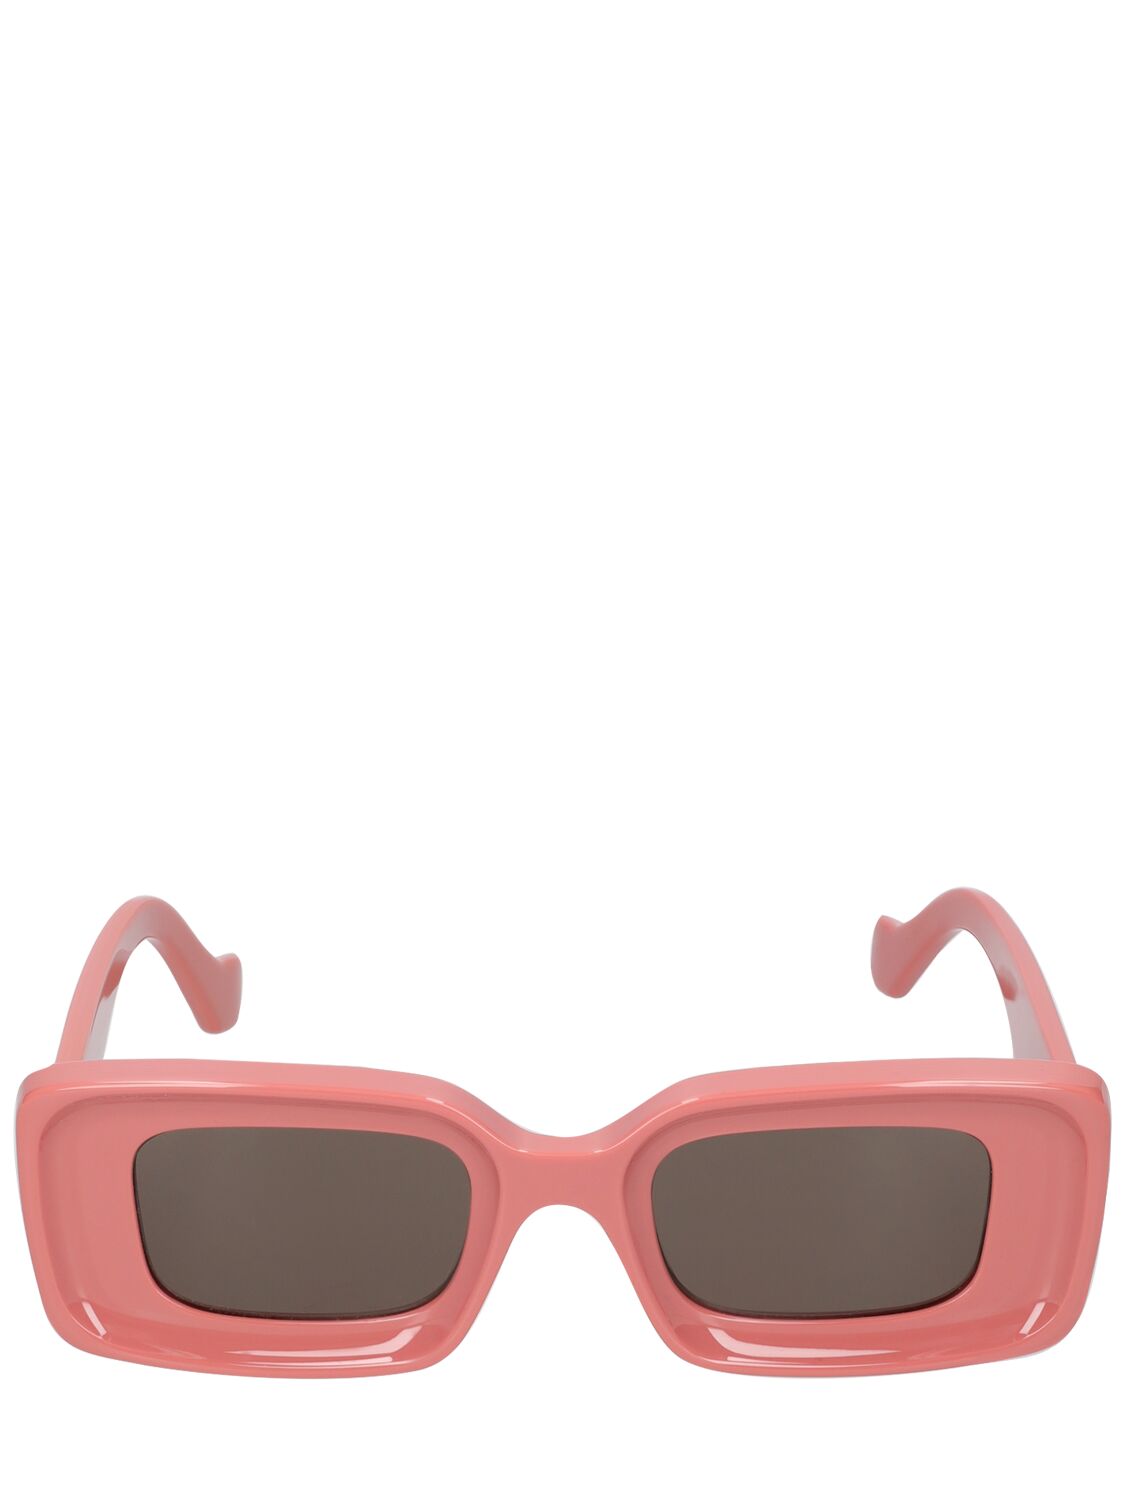 Image of Anagram Acetate Sunglasses